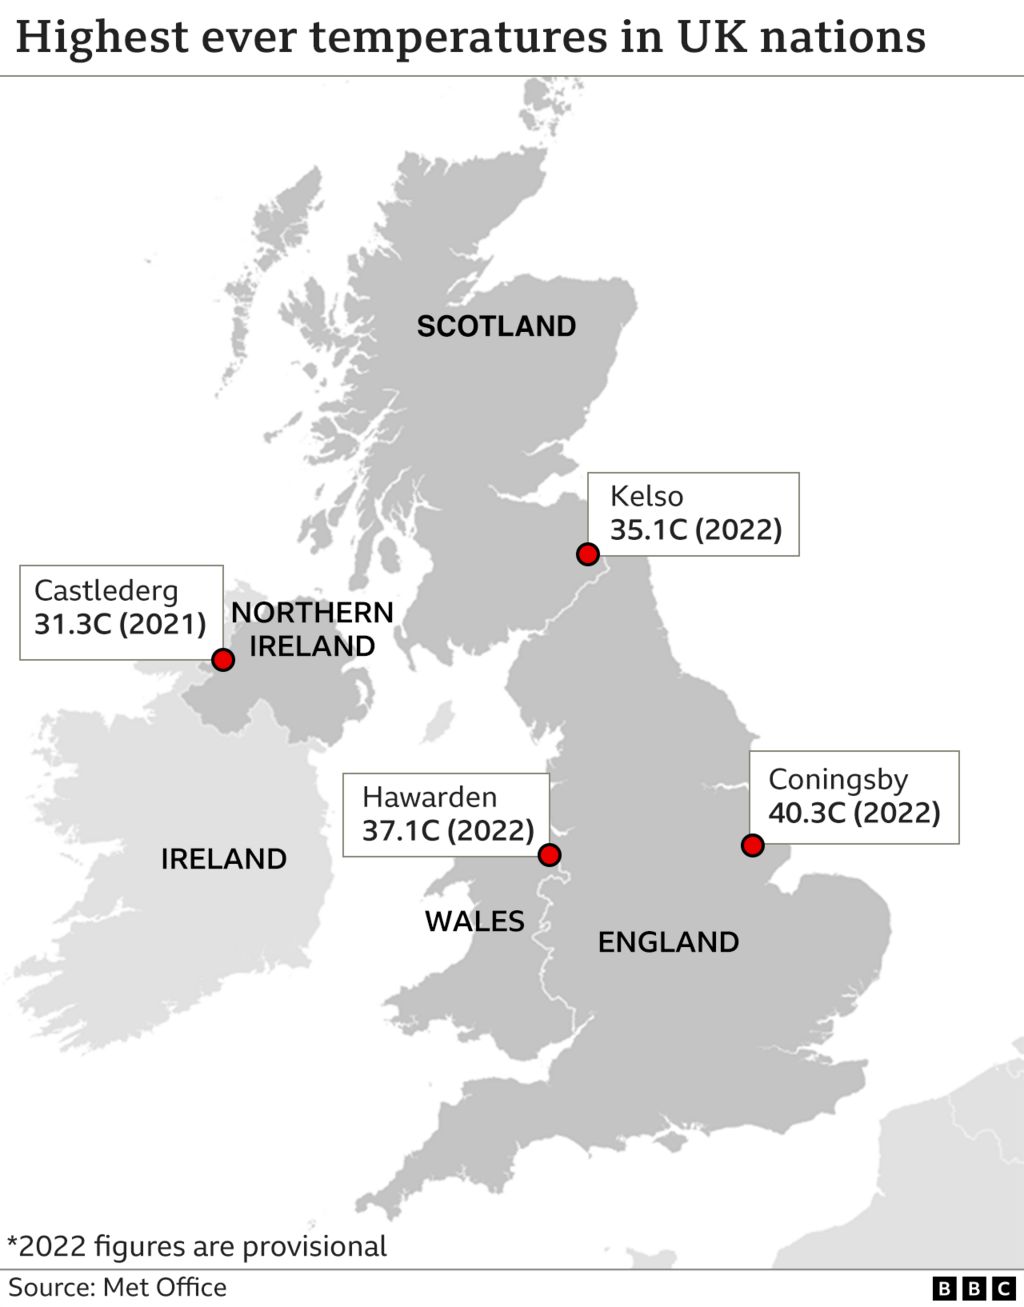 Карта, показывающая рекордные температуры в странах Великобритании